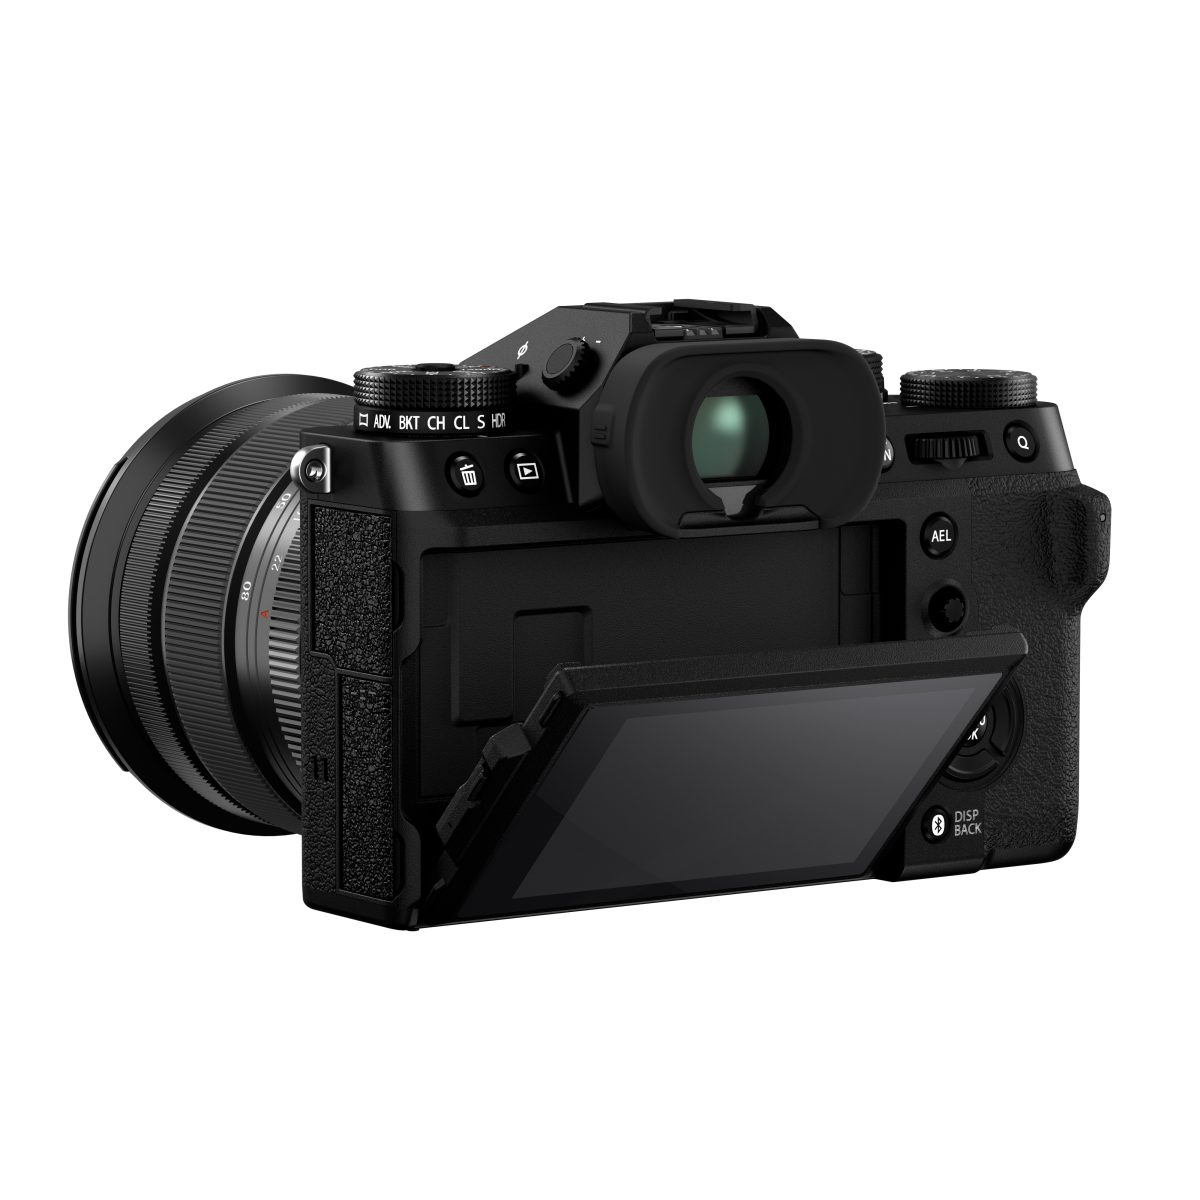 Die Fujifilm X-T5 ist eine Kamera der fünften Generation der X-T-Serie